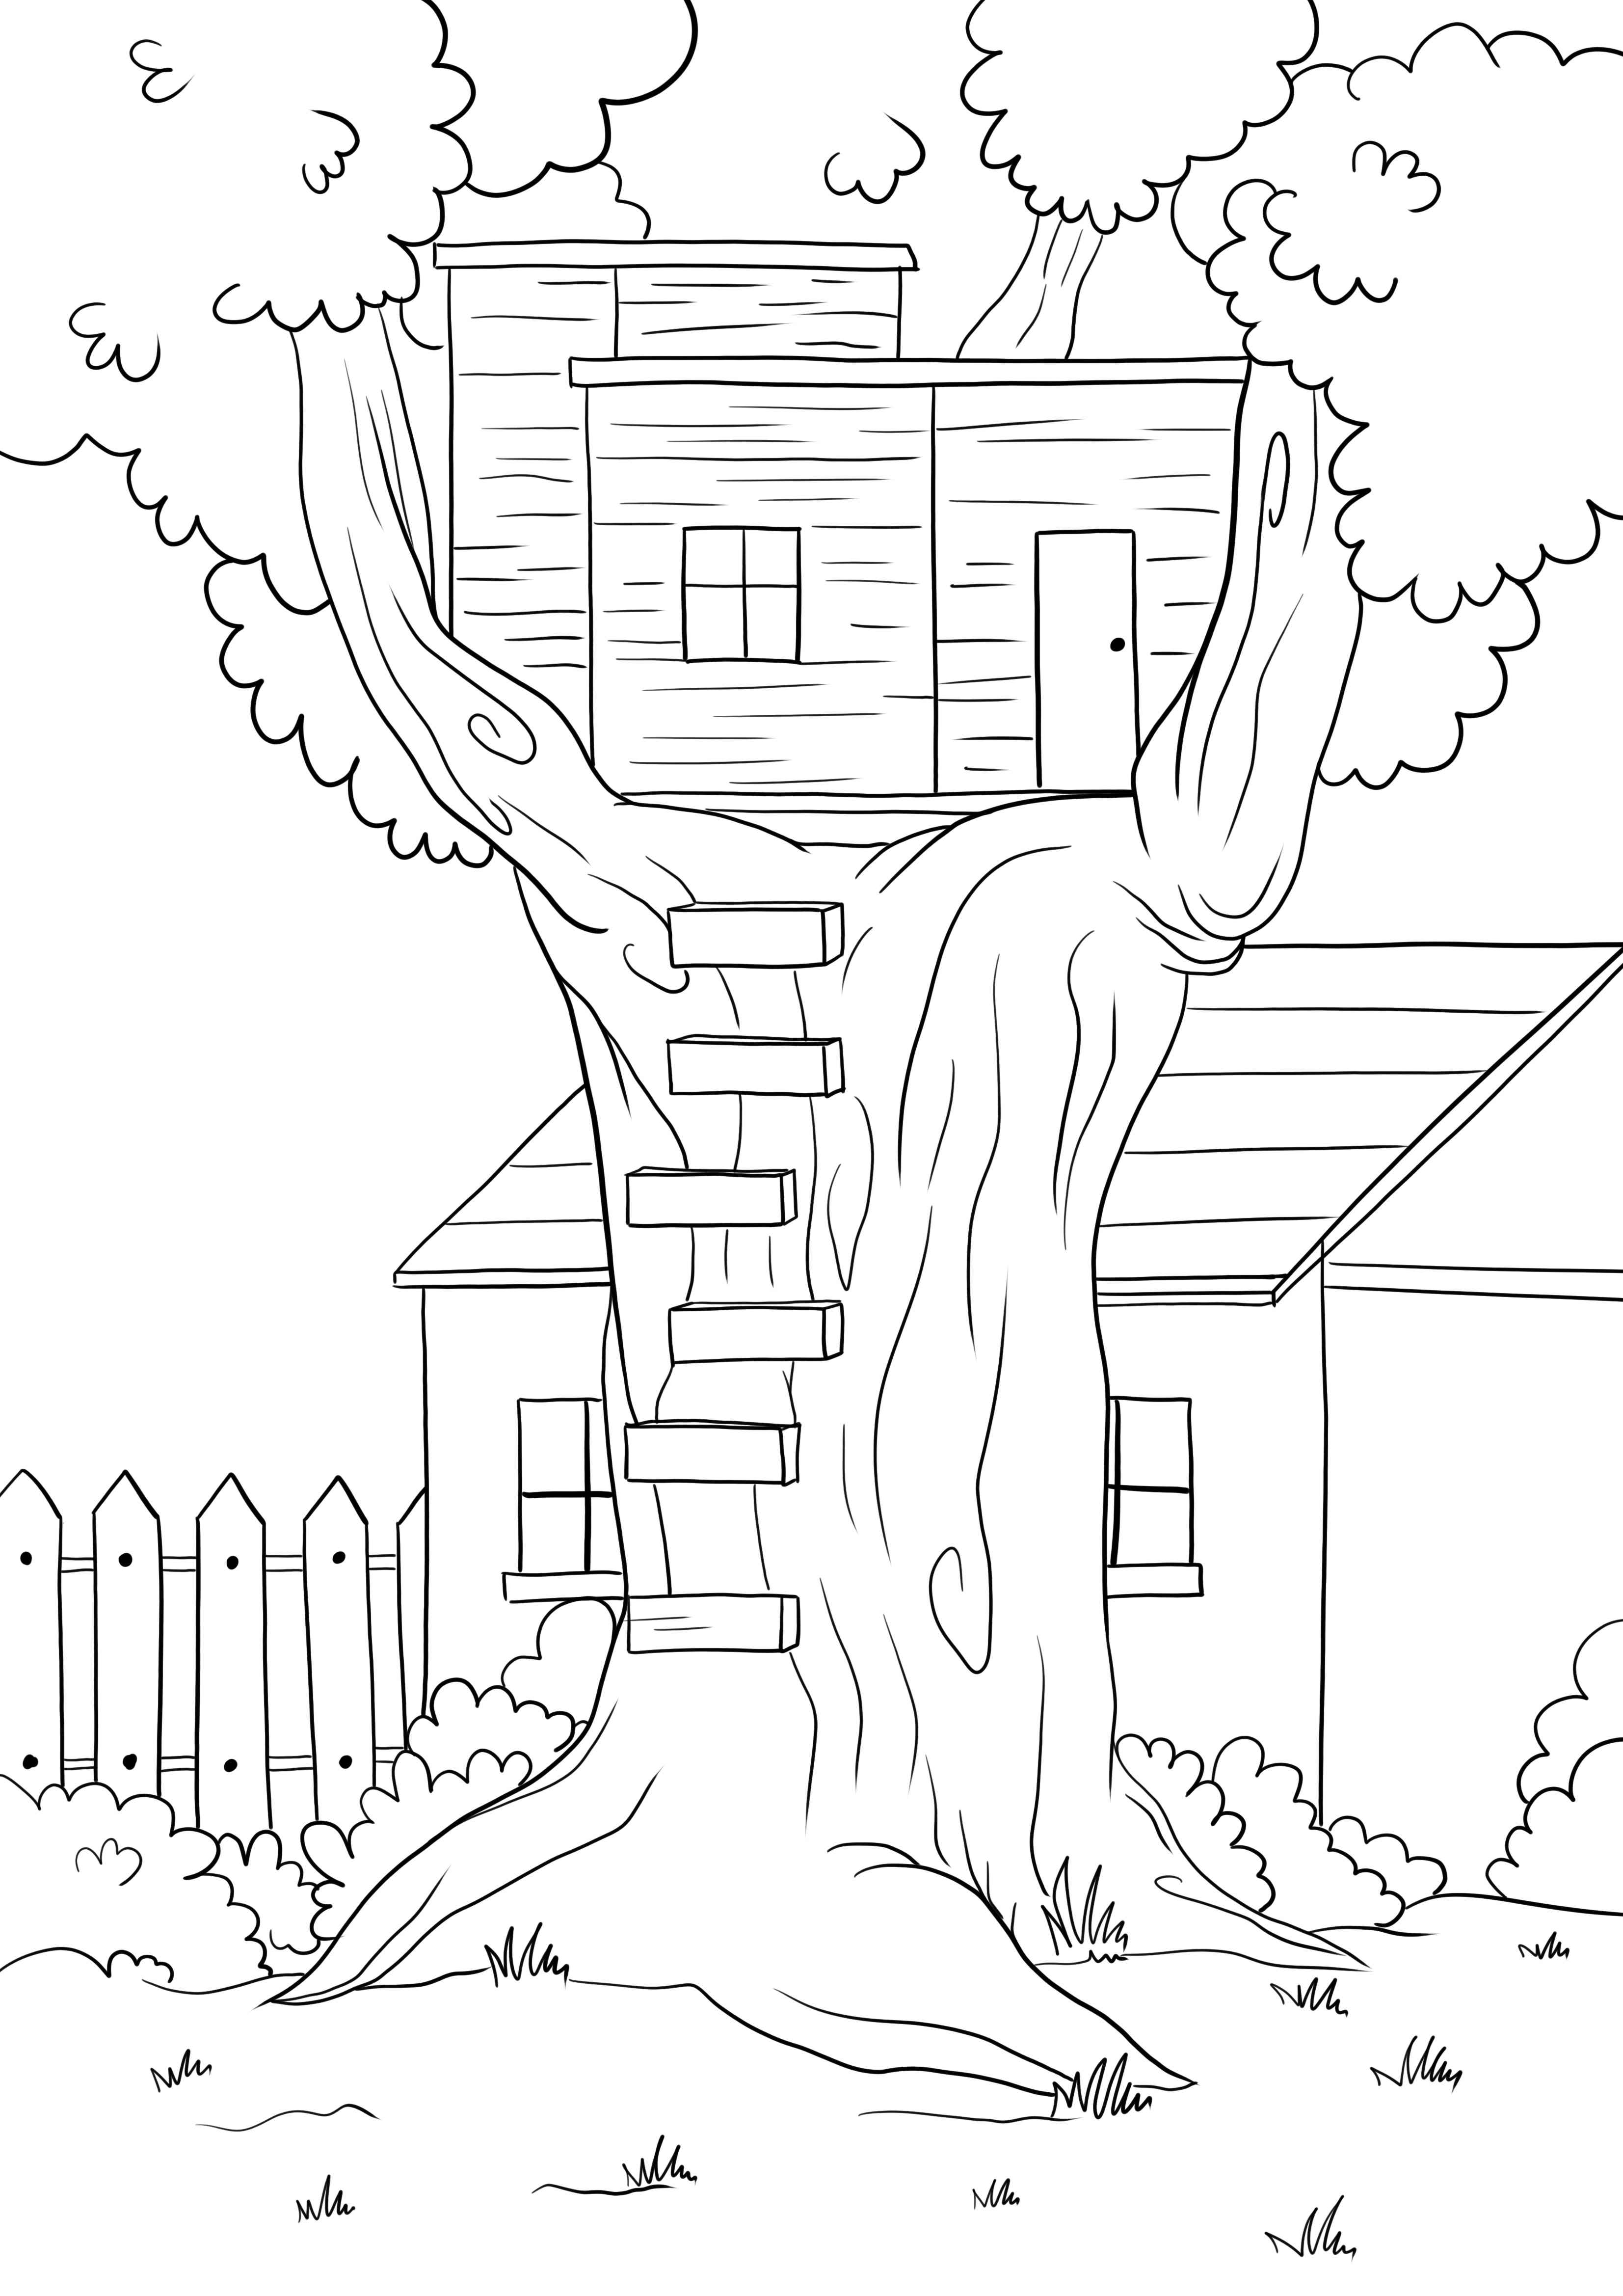 Ağaç ev ücretsiz boyama ve indirme veya yazdırma